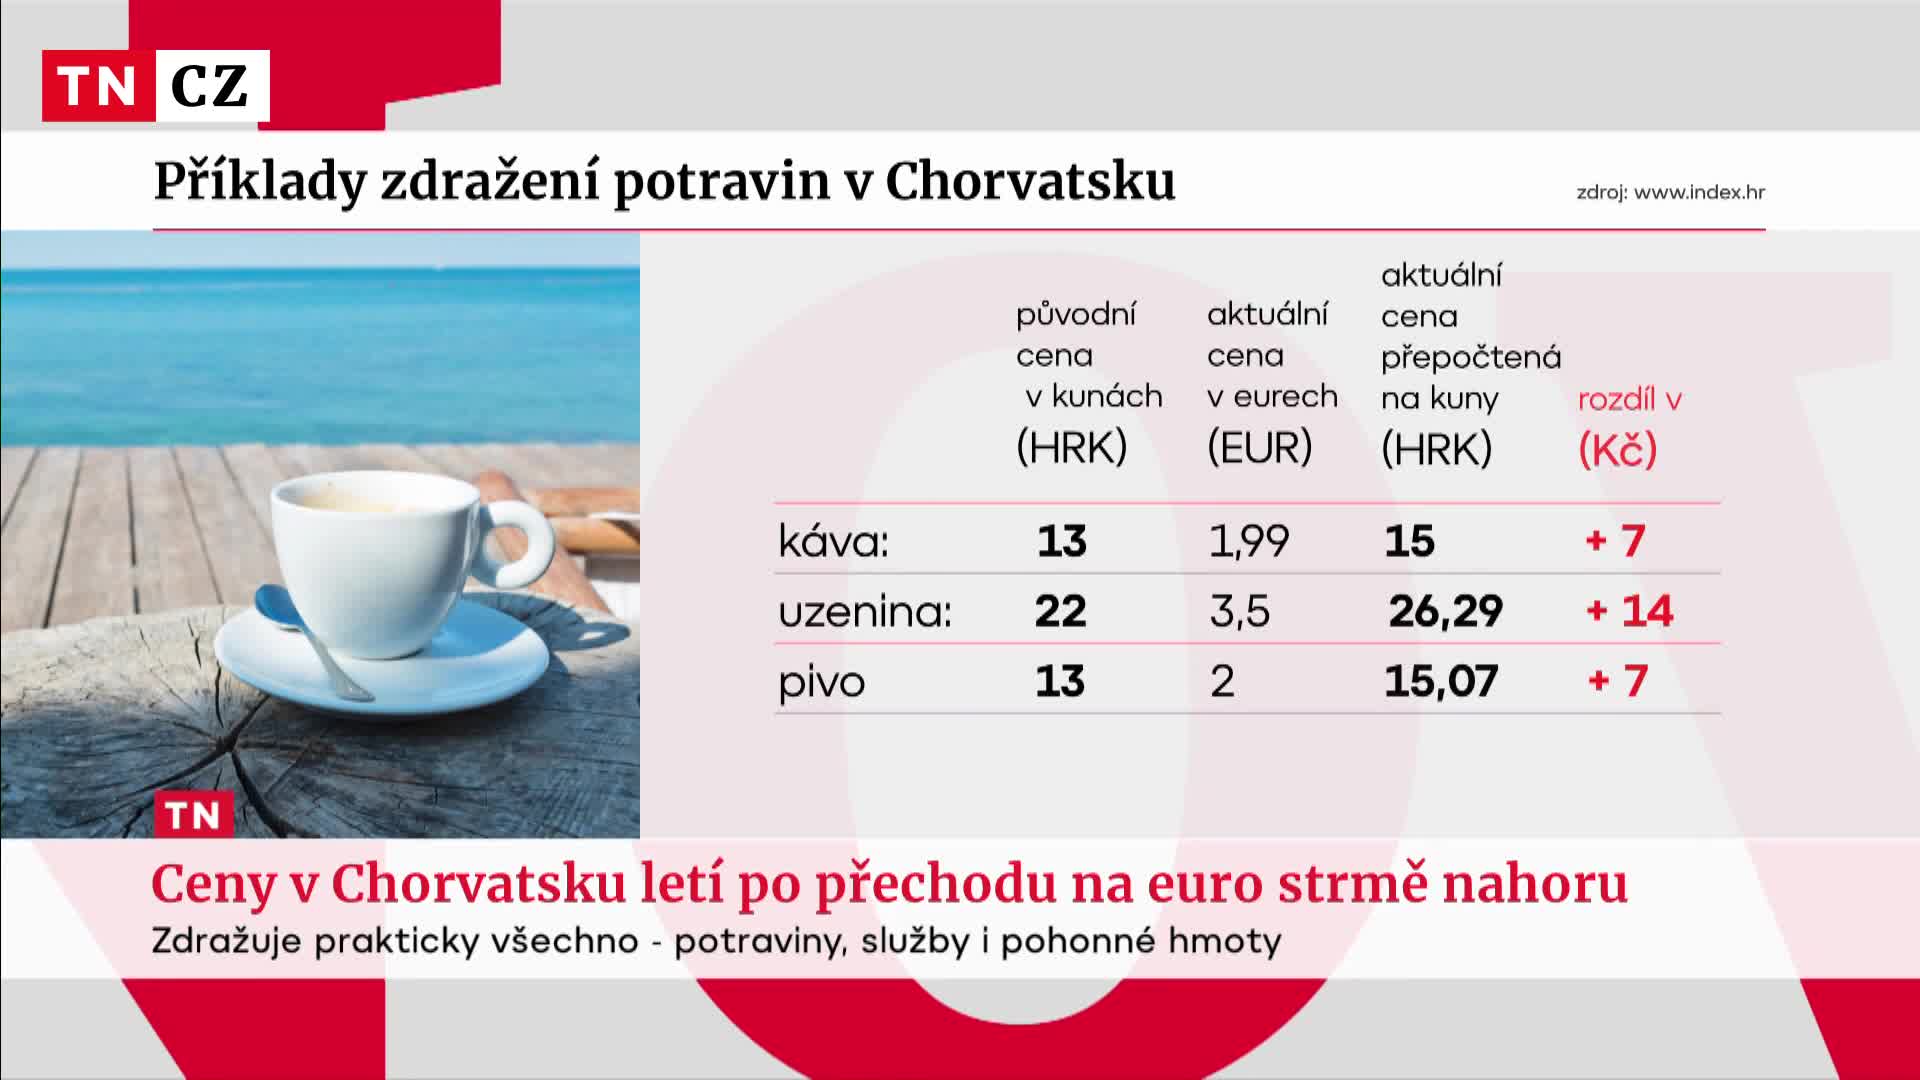 Dovolená v Chorvatsku bude letos dražší. Po přechodu na euro ceny strmě rostou